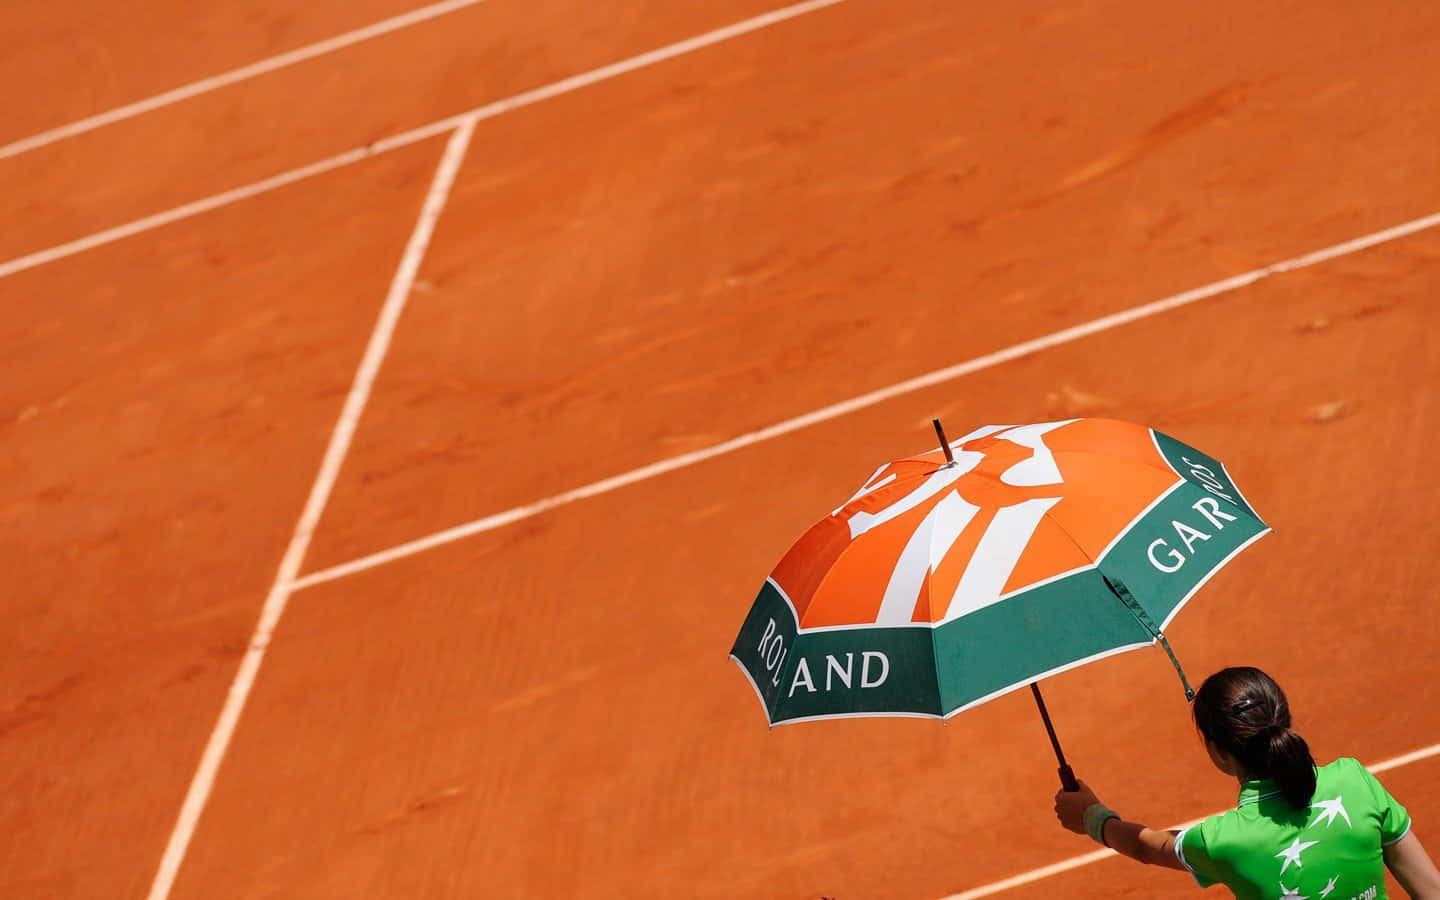 Einefrau Hält Einen Regenschirm Auf Einem Tennisplatz.